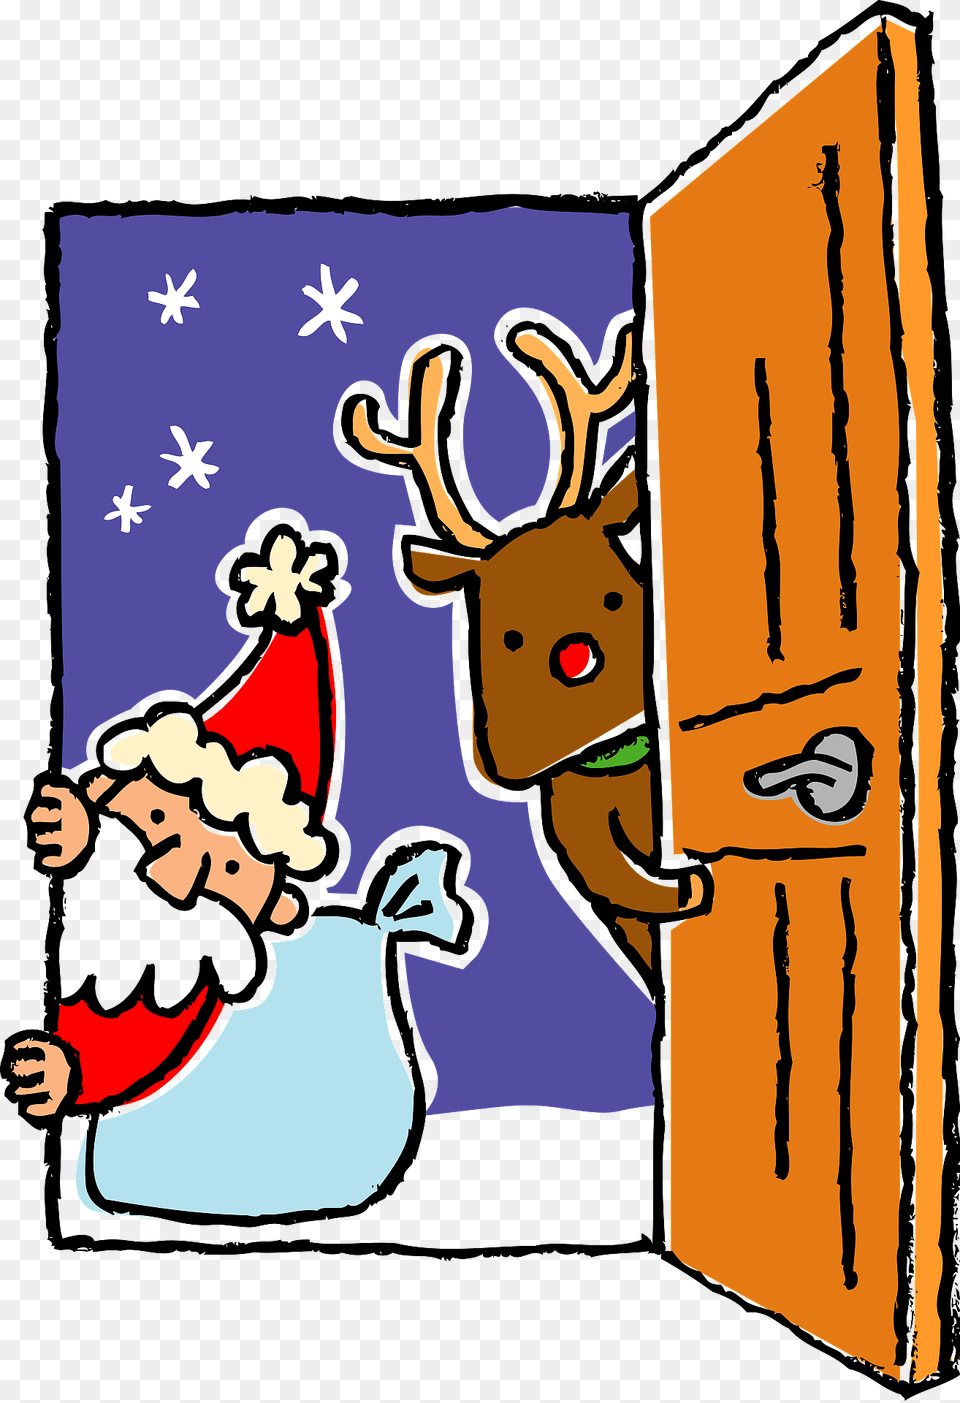 Santa Claus And Reindeer In A Open Door Clipart, Animal, Mammal, Wildlife, Deer Free Png Download